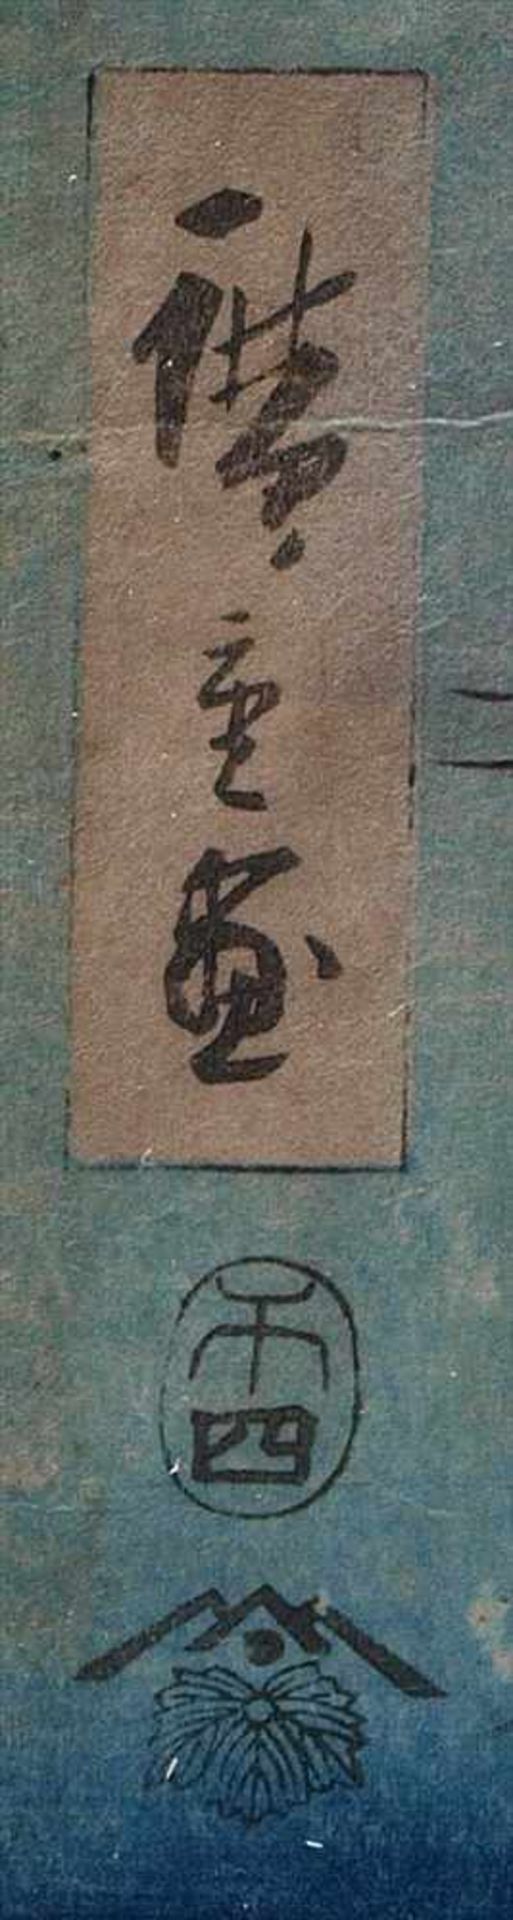 Farbholzschnitt, Japan, 19.Jhdt.Wohl Hiroshige I oder II. Weite Seenlandschaft mit Fischerbooten und - Bild 3 aus 4